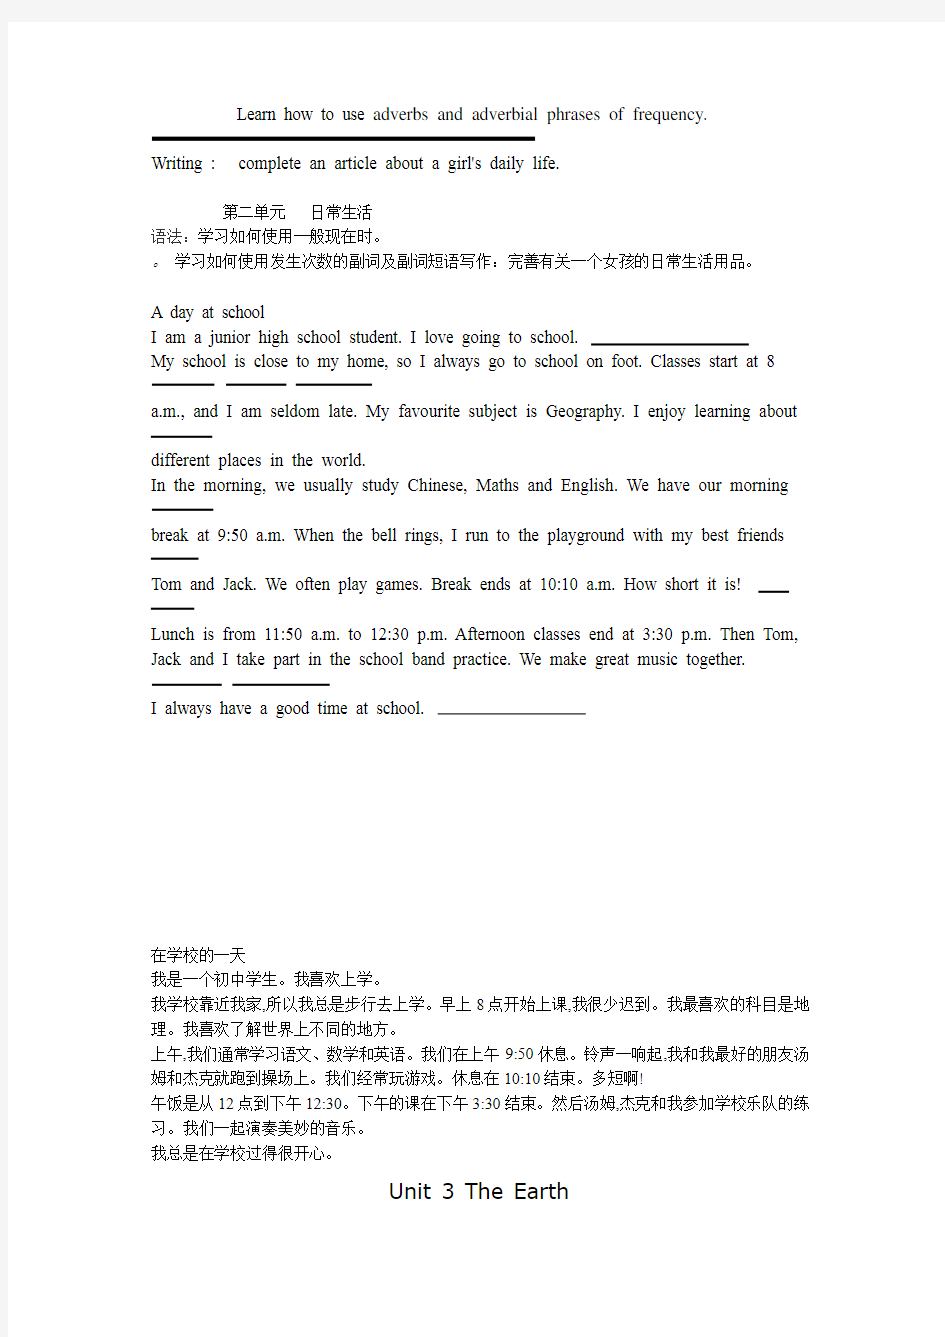 广州版七年级英语上册课文英汉对照翻译